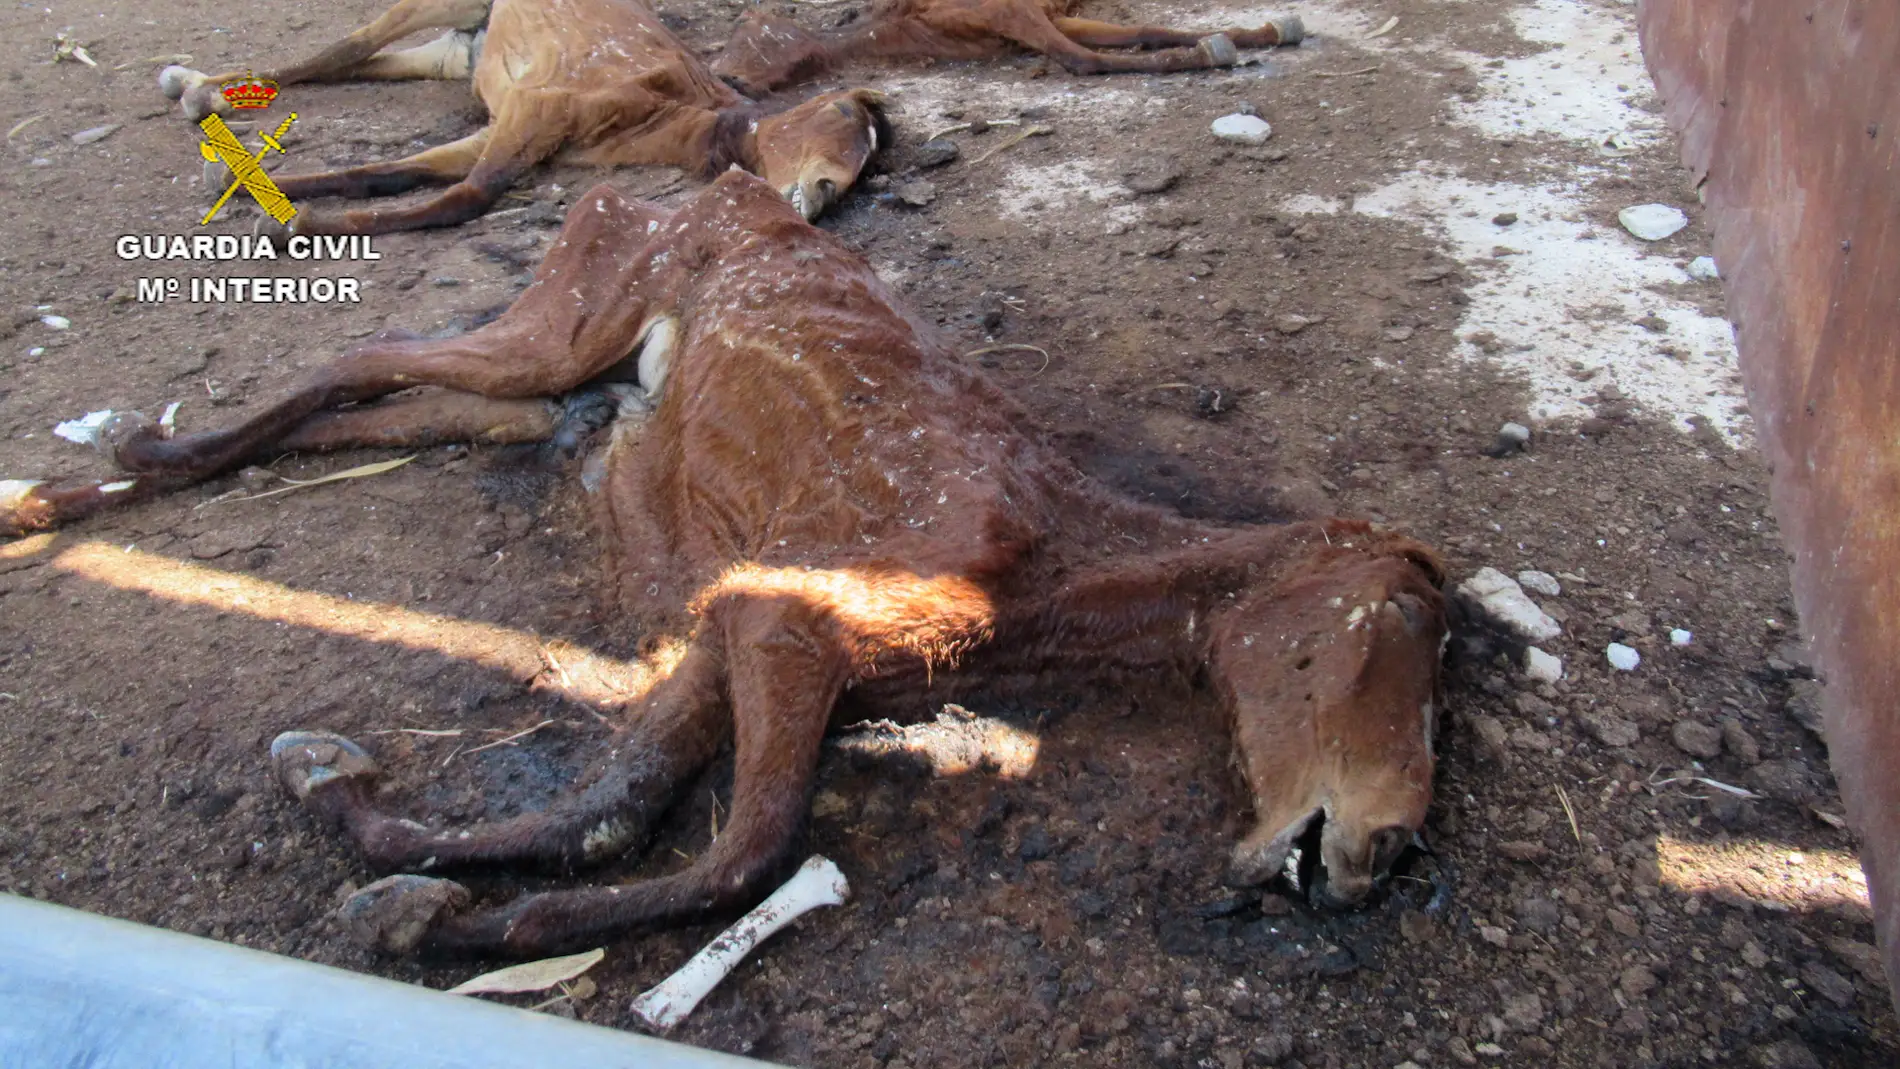 La Guardia Civil halla 31 caballos muertos en una granja cuyo propietario está siendo investigado por maltrato animal